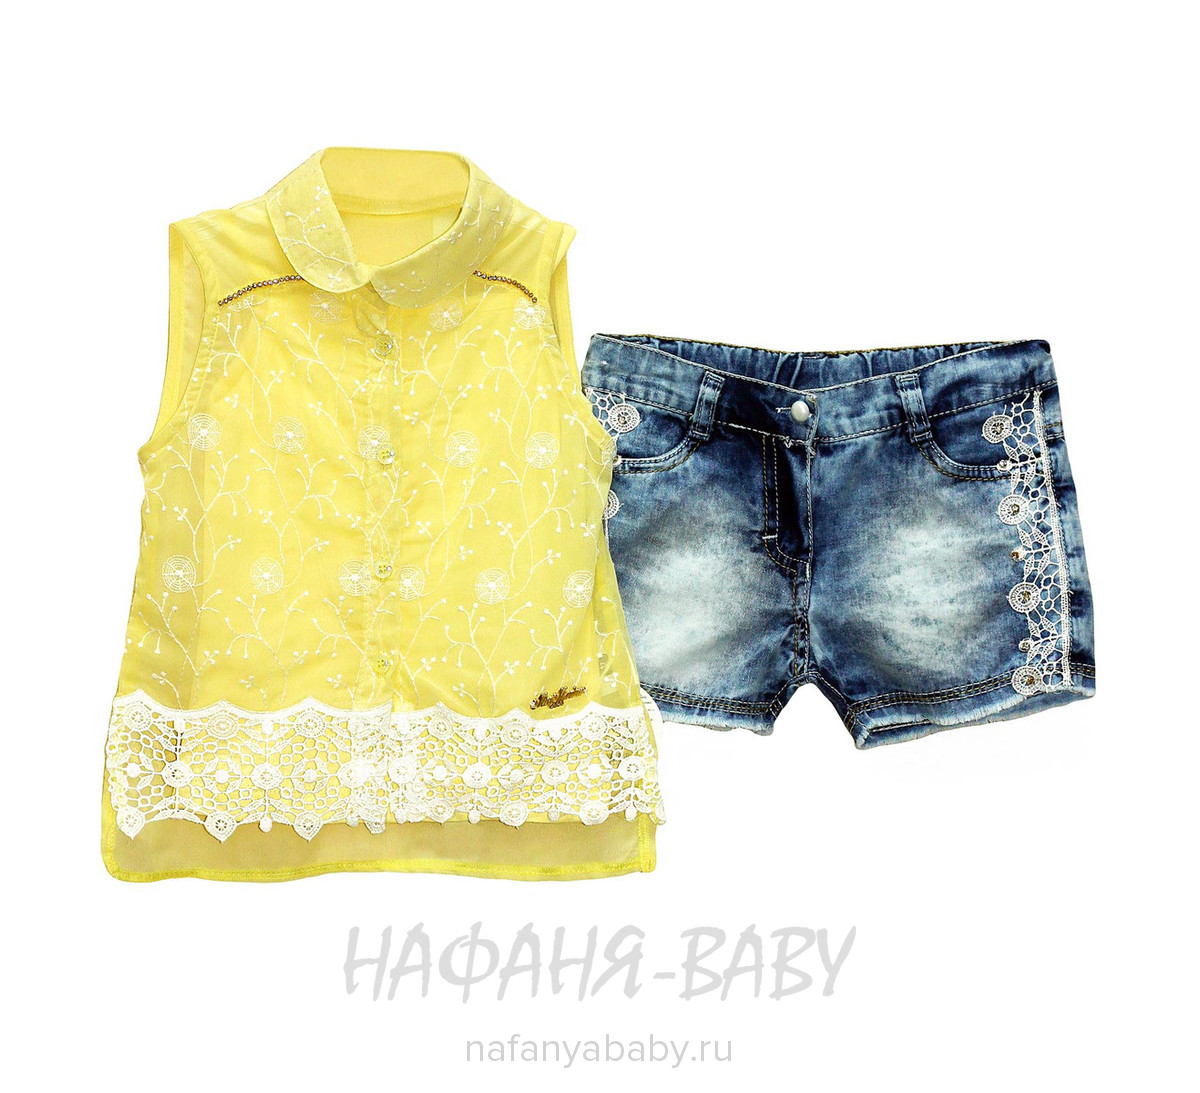 Детский комплект (блузка+майка+джинсовые шорты) MISS MARINE арт: 0527, 5-9 лет, 1-4 года, цвет желтый с синим, оптом Турция